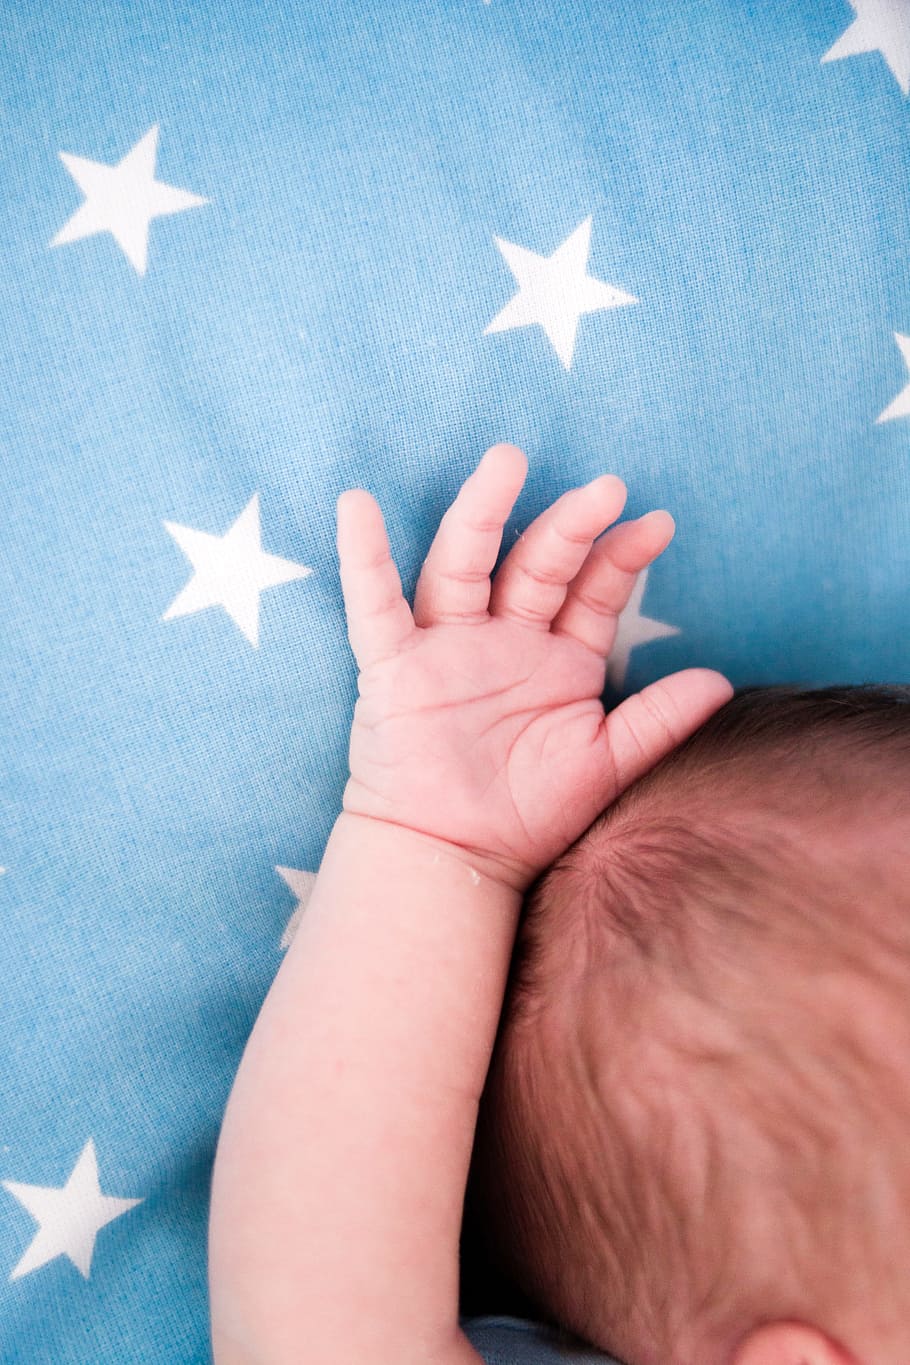 pequeno, bebê, mão, azul, estrelas, dedos, recém-nascido, família, forma de estrela, mão humana